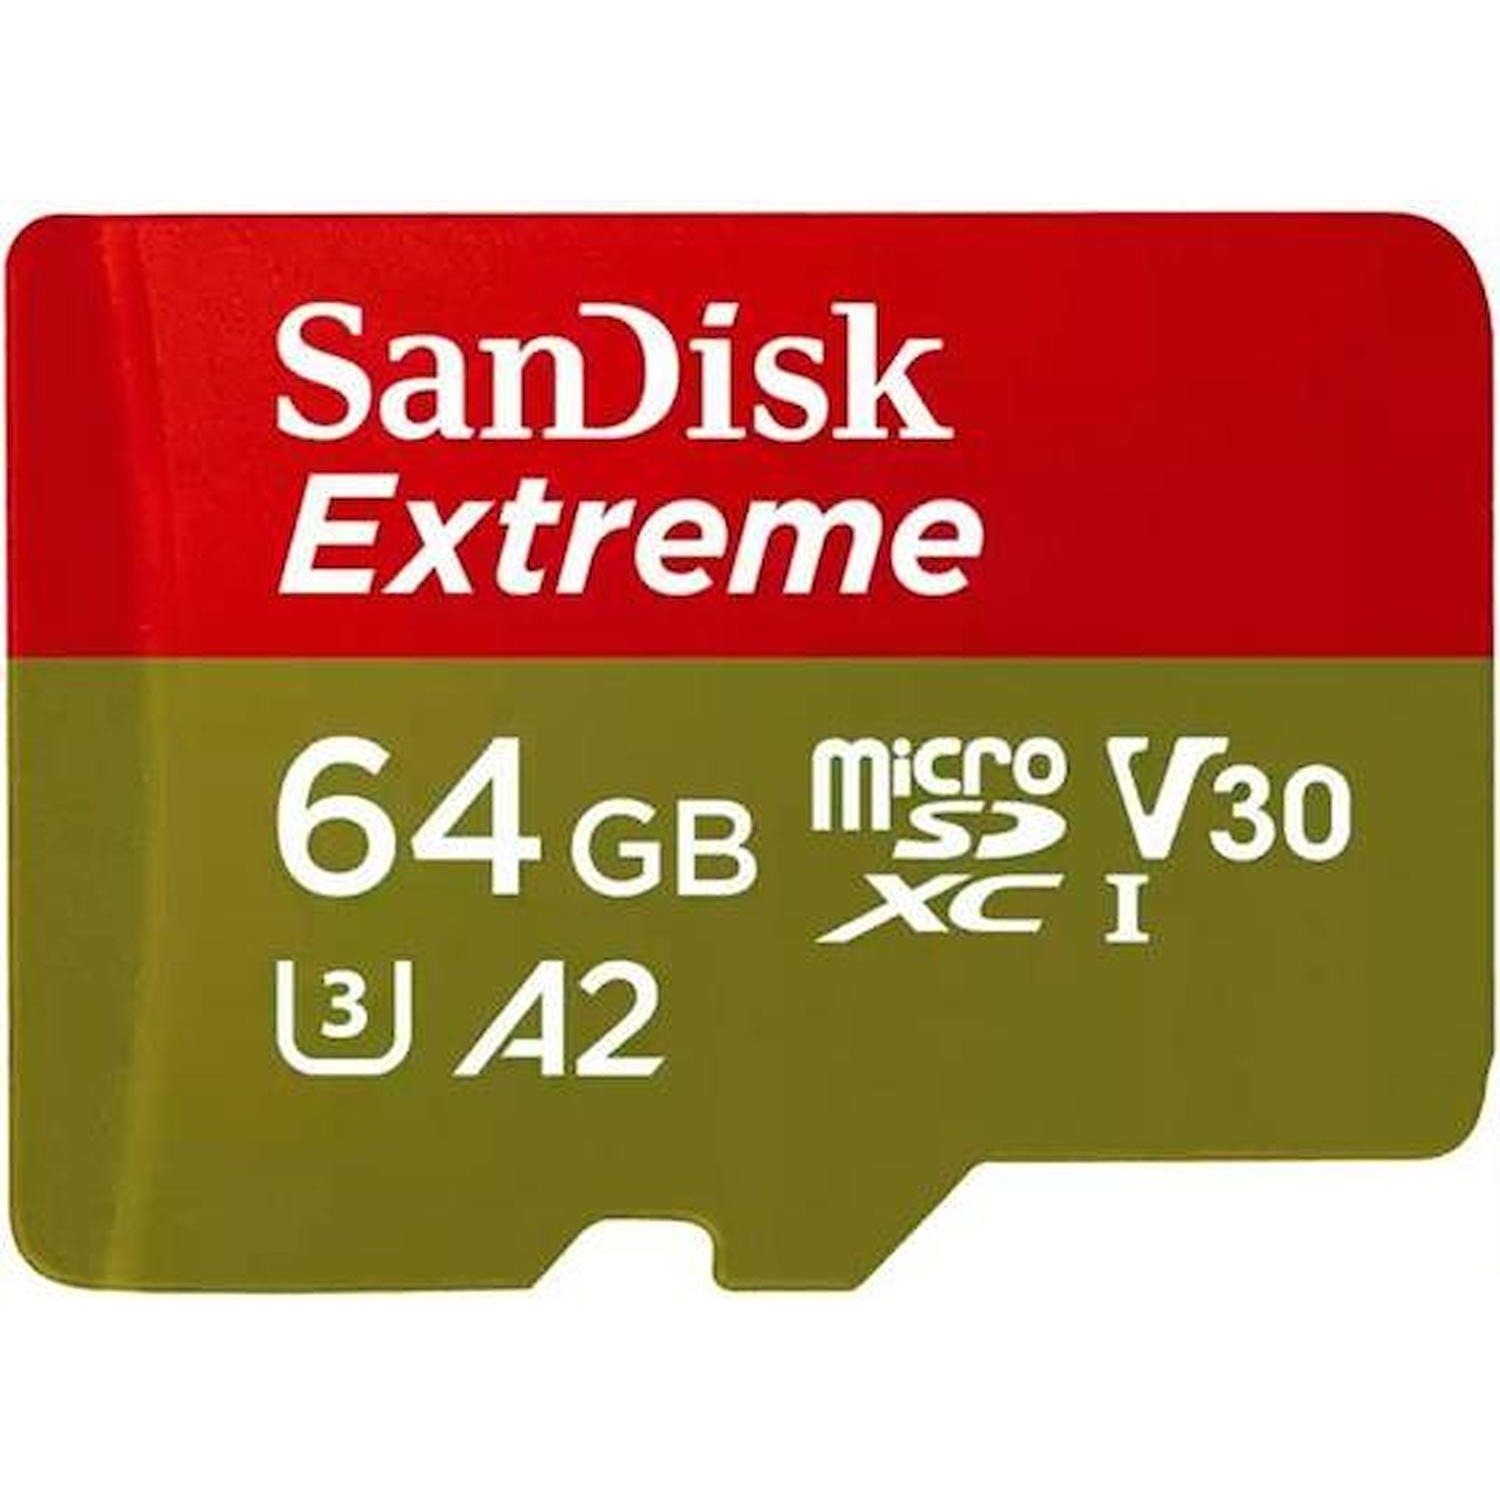 Immagine per MicroSD San Disk Extreme Mobile 64GB XC con       adattatore SD da DIMOStore